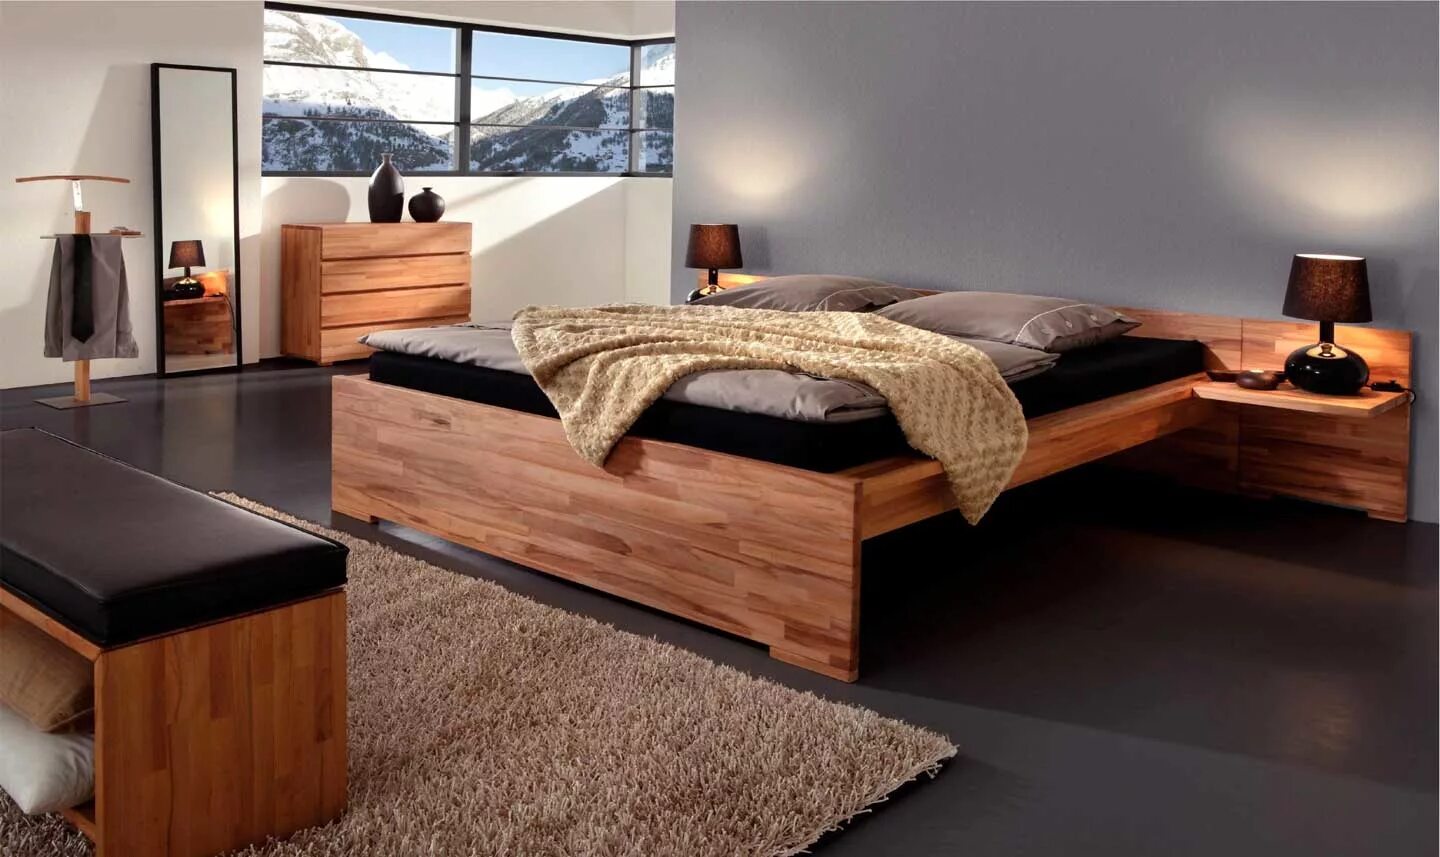 Кровати двуспальные сосна. Кровать из дерева. Кровать из массива дерева. Современная деревянная мебель. Кровать двуспальная деревянная.